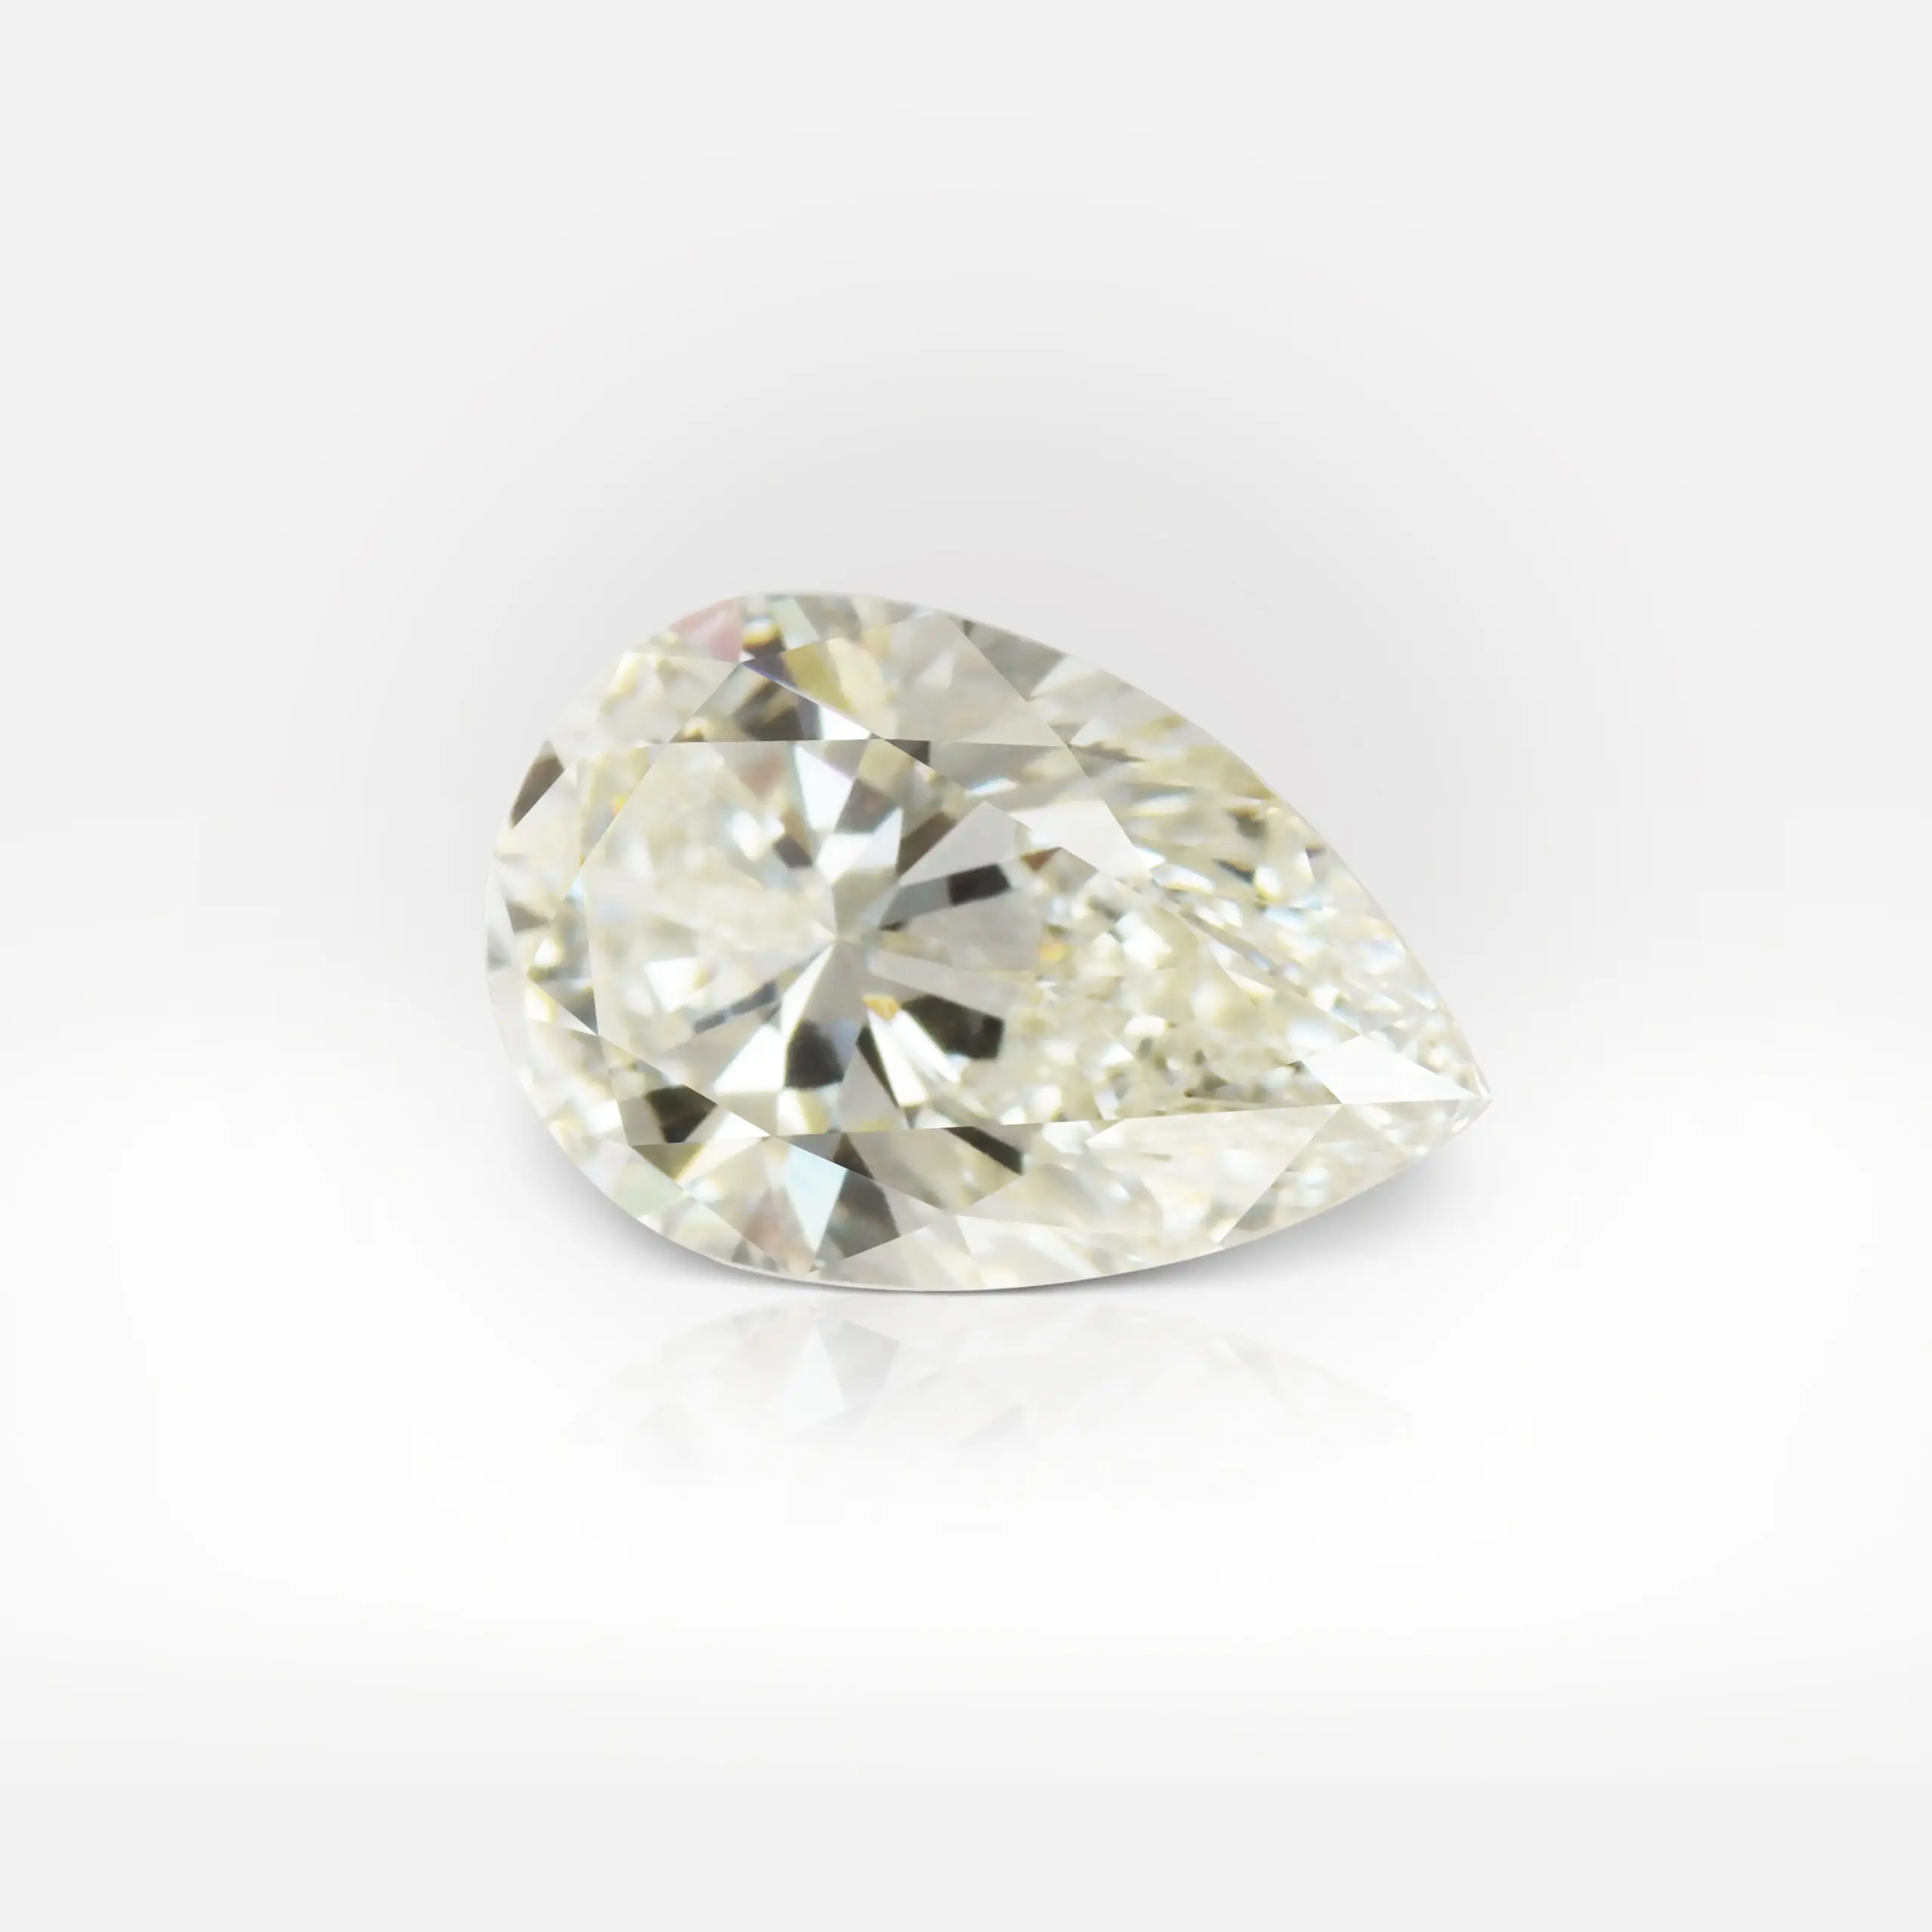 1.02 carat L VS1 Pear Shape Diamond GIA - picture 1